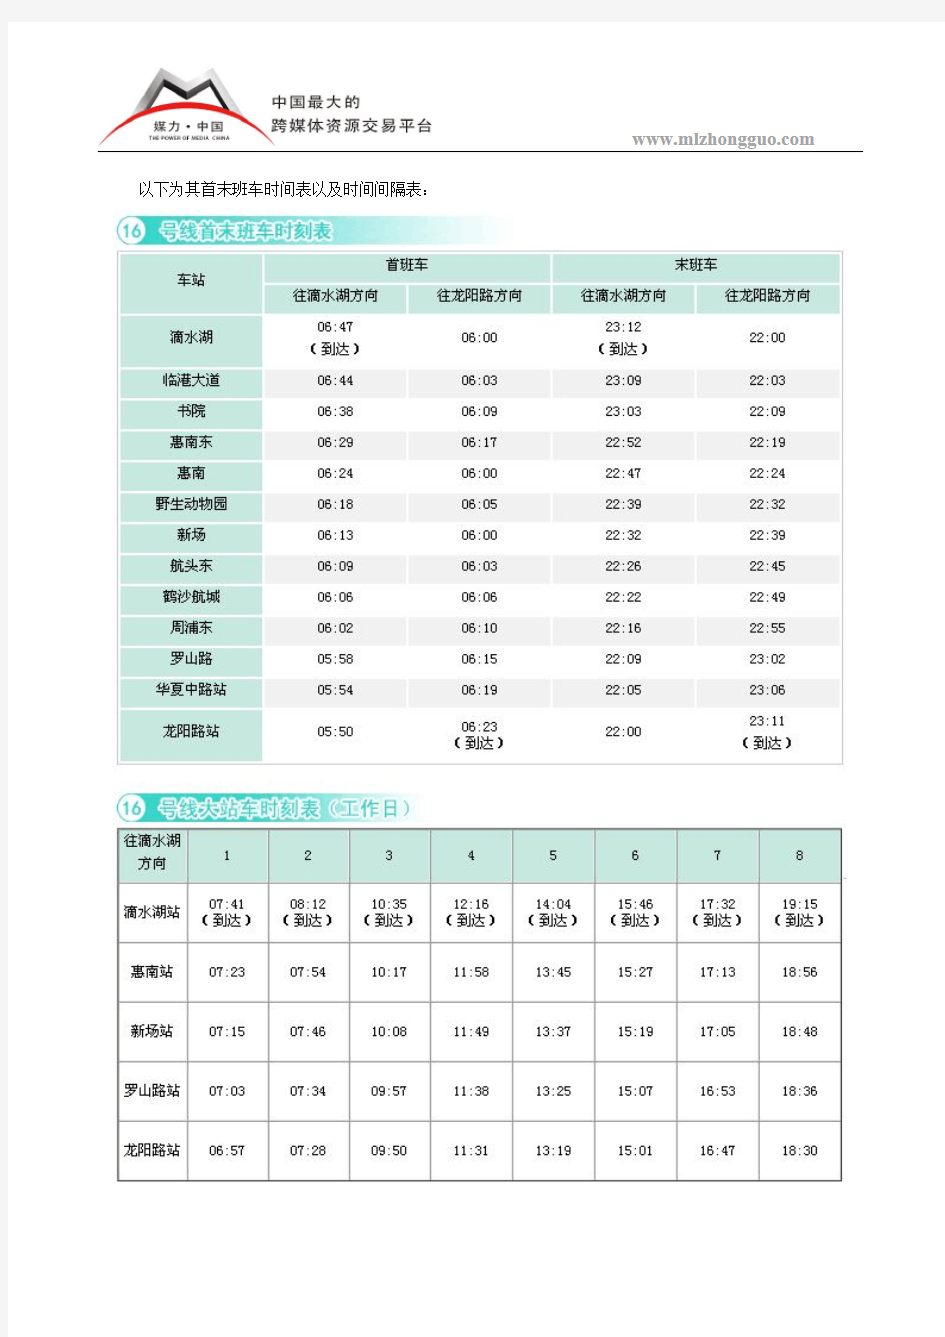 最新上海地铁16号线车辆运营数据表